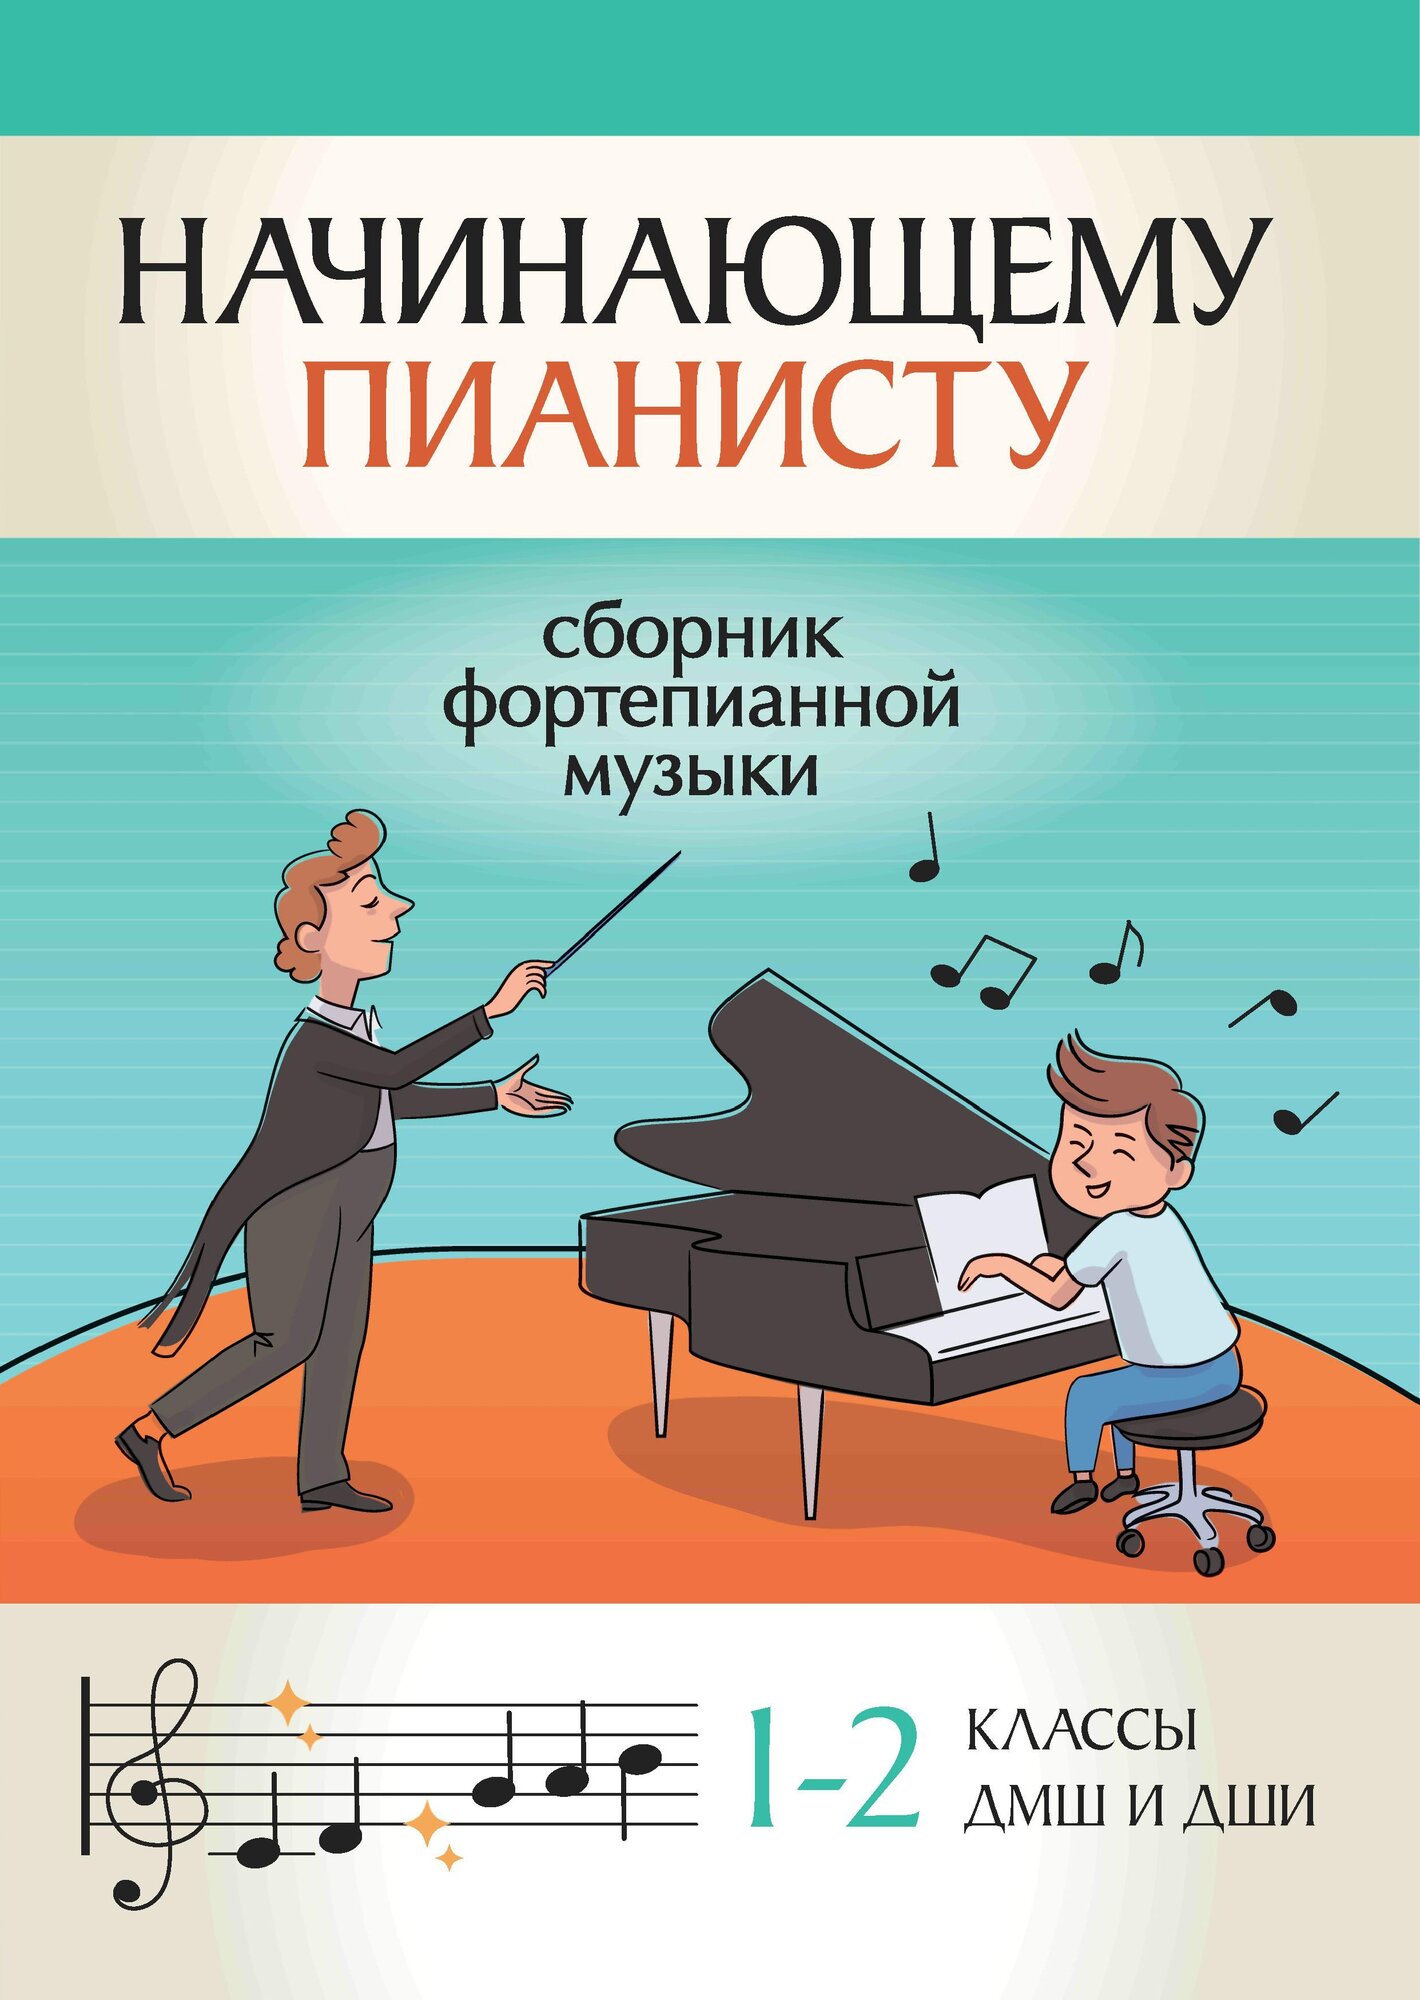 Начинающему пианисту. Сборник фортепианной музыки. 1-2 классы ДМШ и ДШИ - фото №1